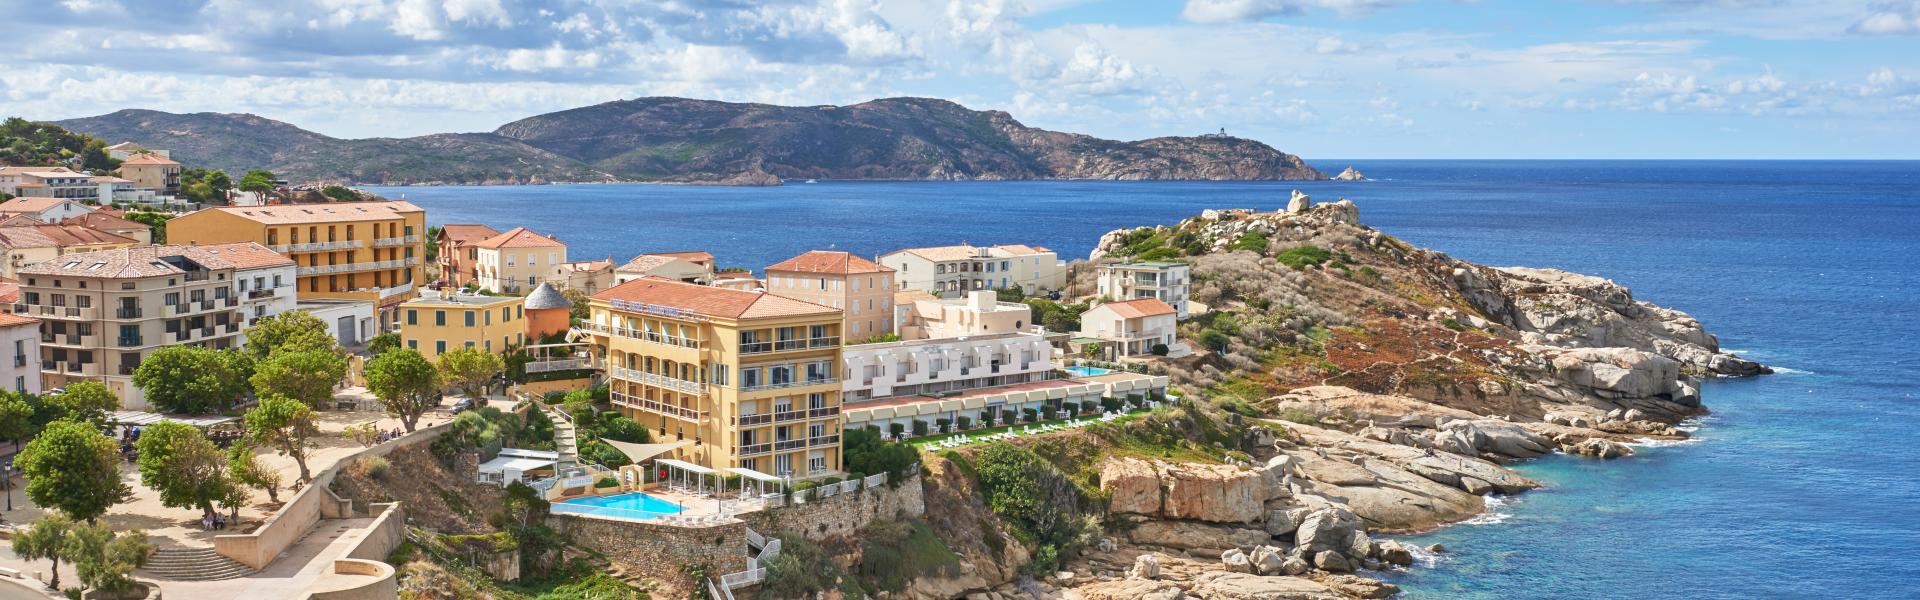 Calvi (Corsica) affittare case vacanze - Casamundo